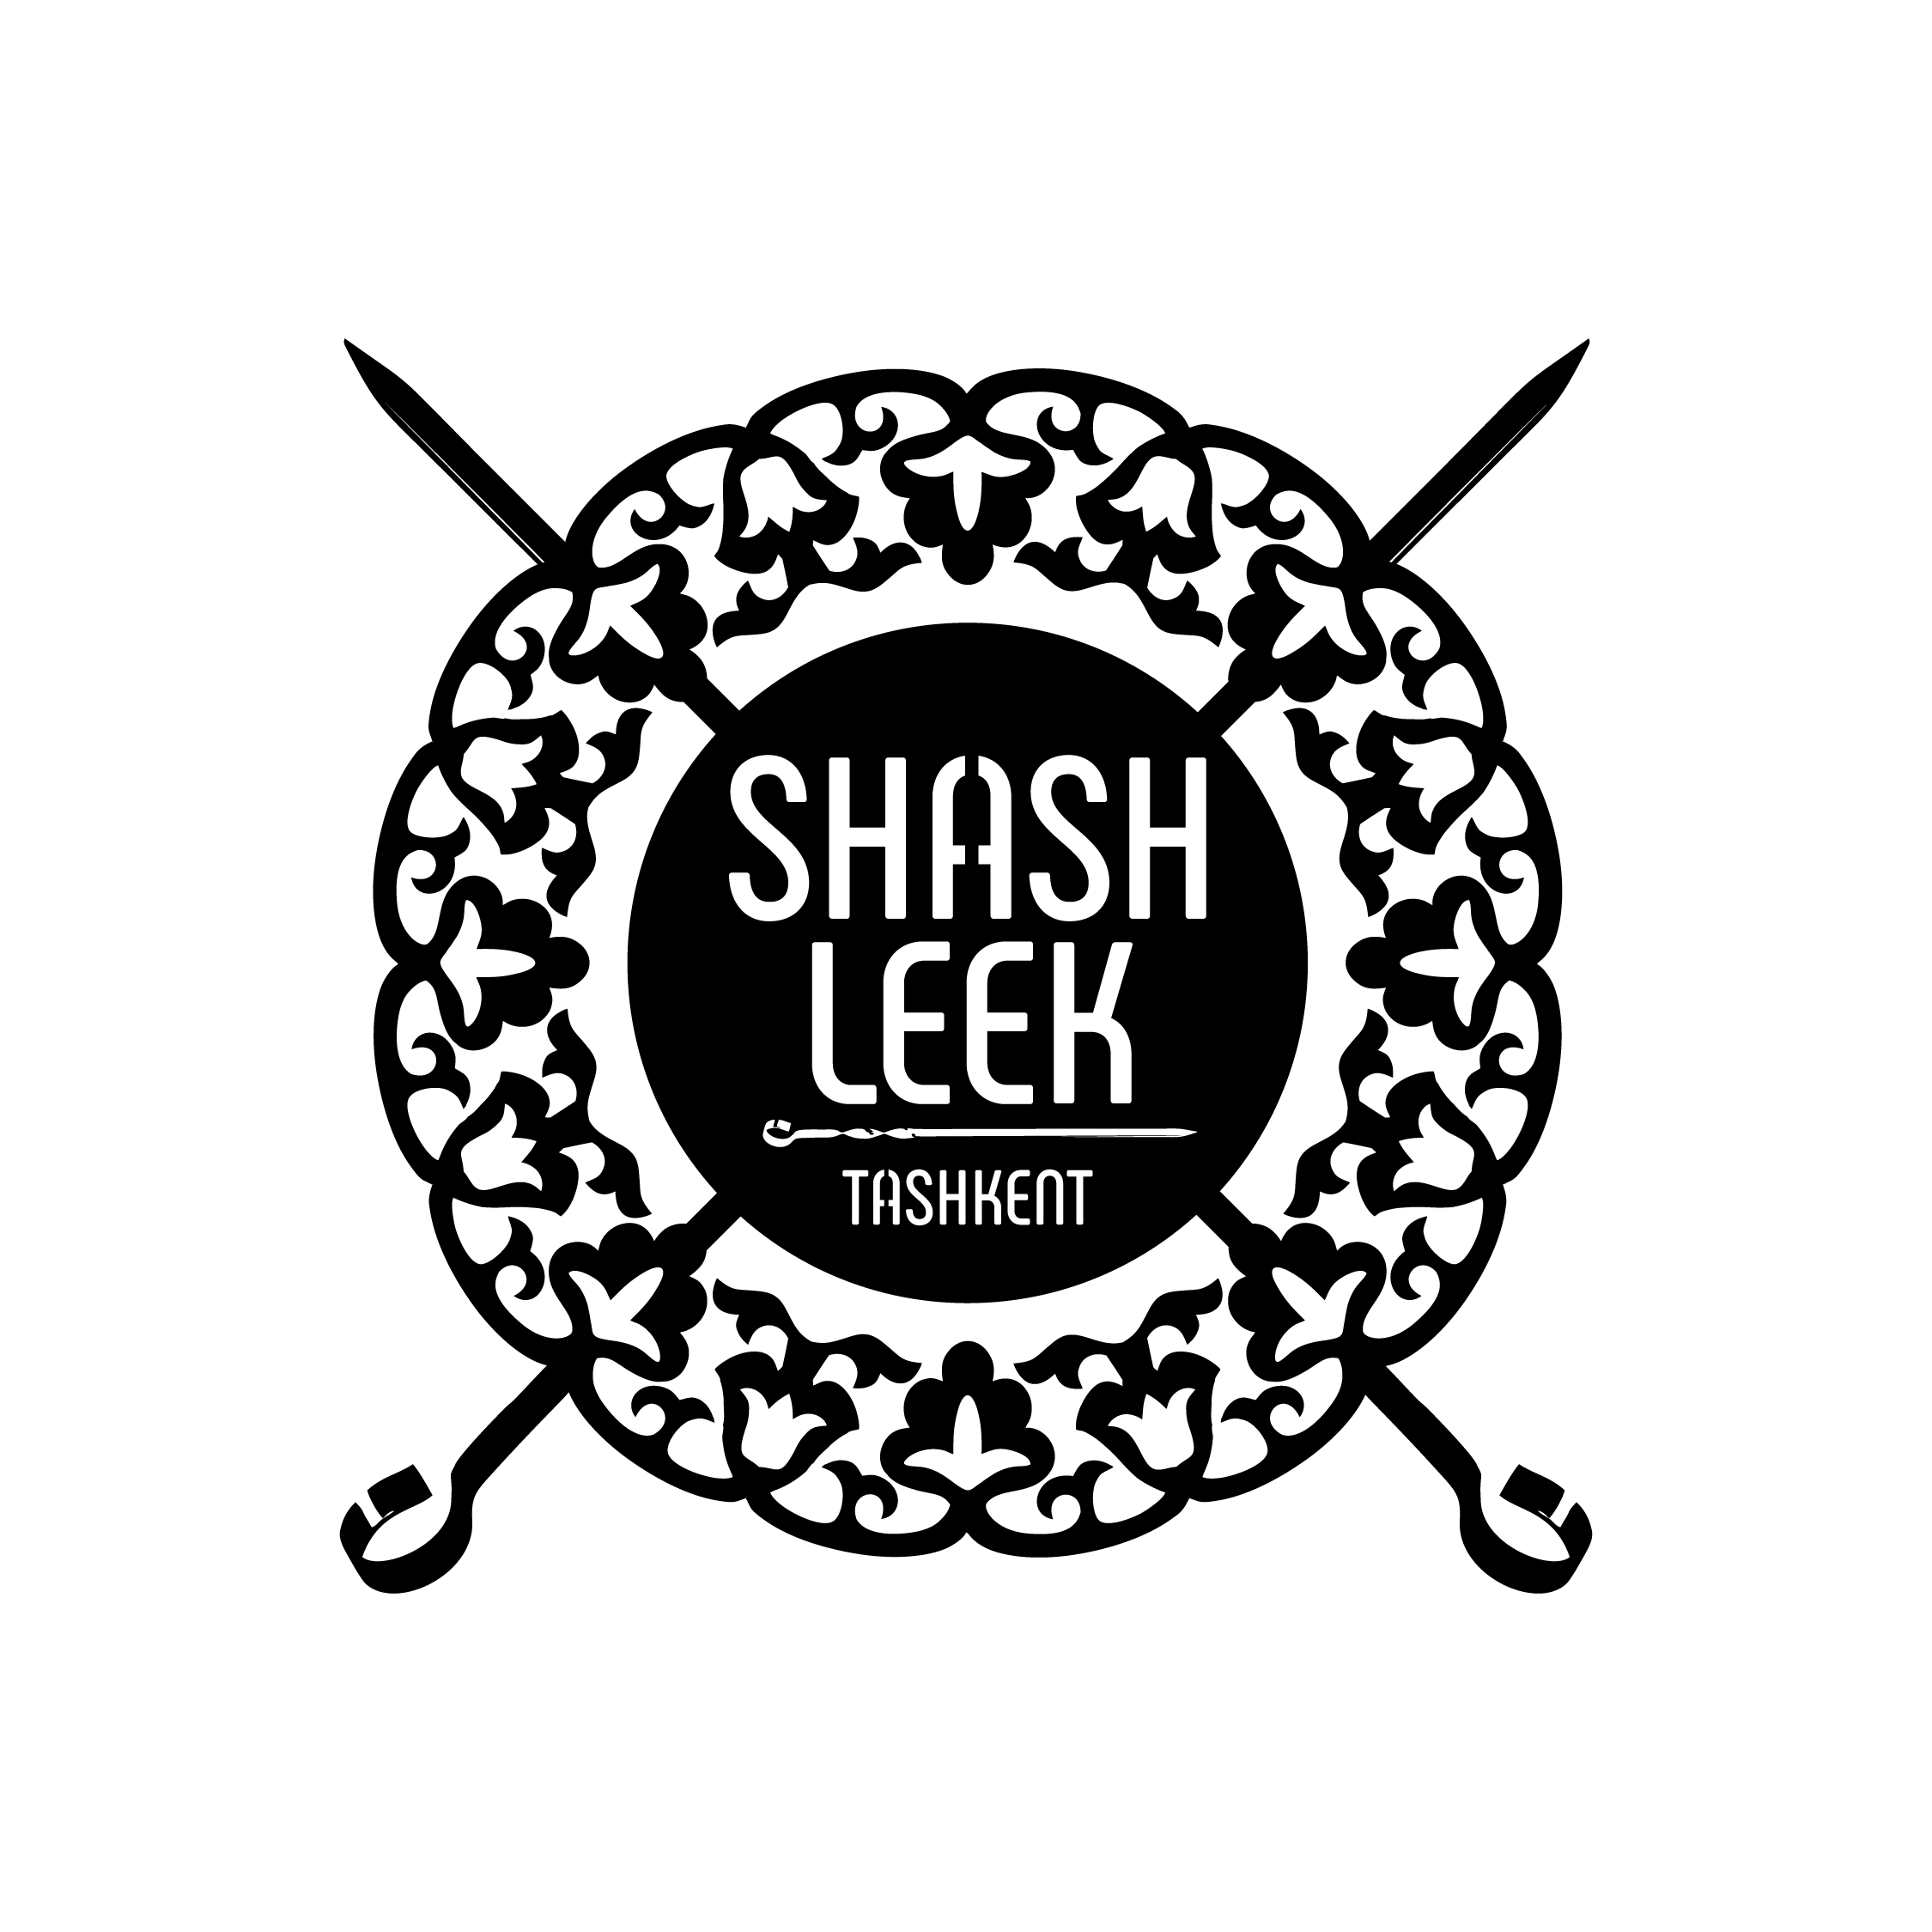 Shashleek Logo